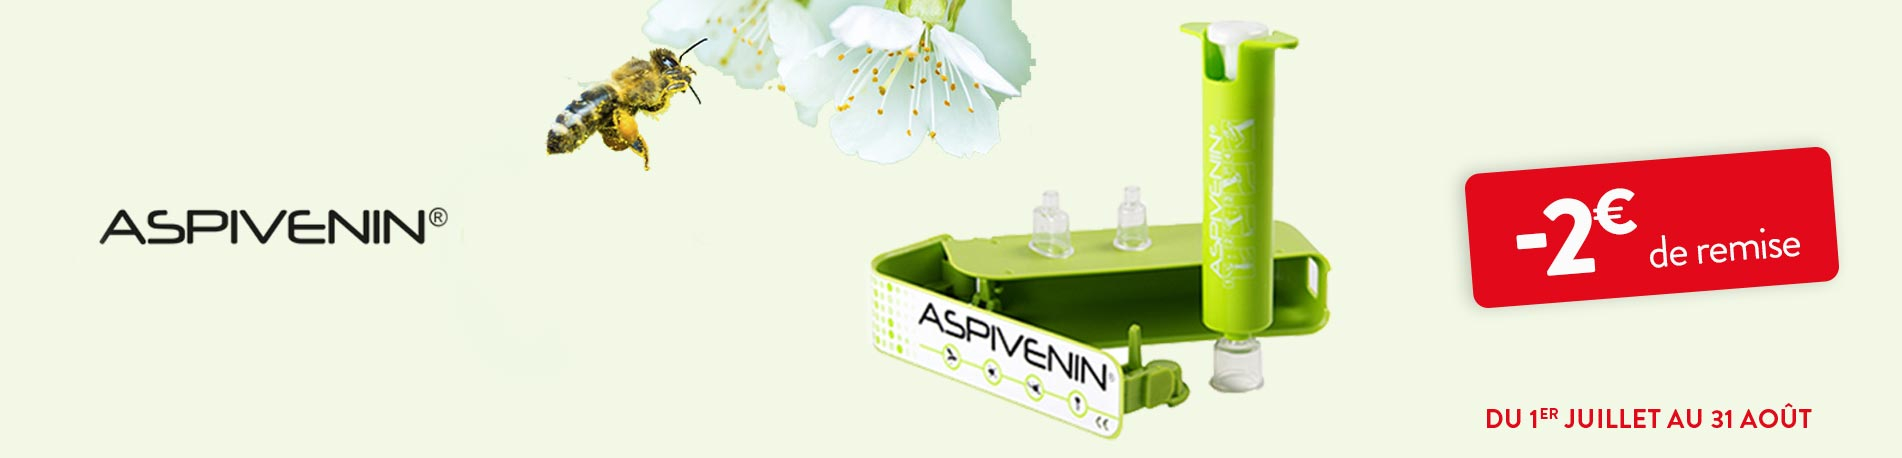 Promotion Aspivenin